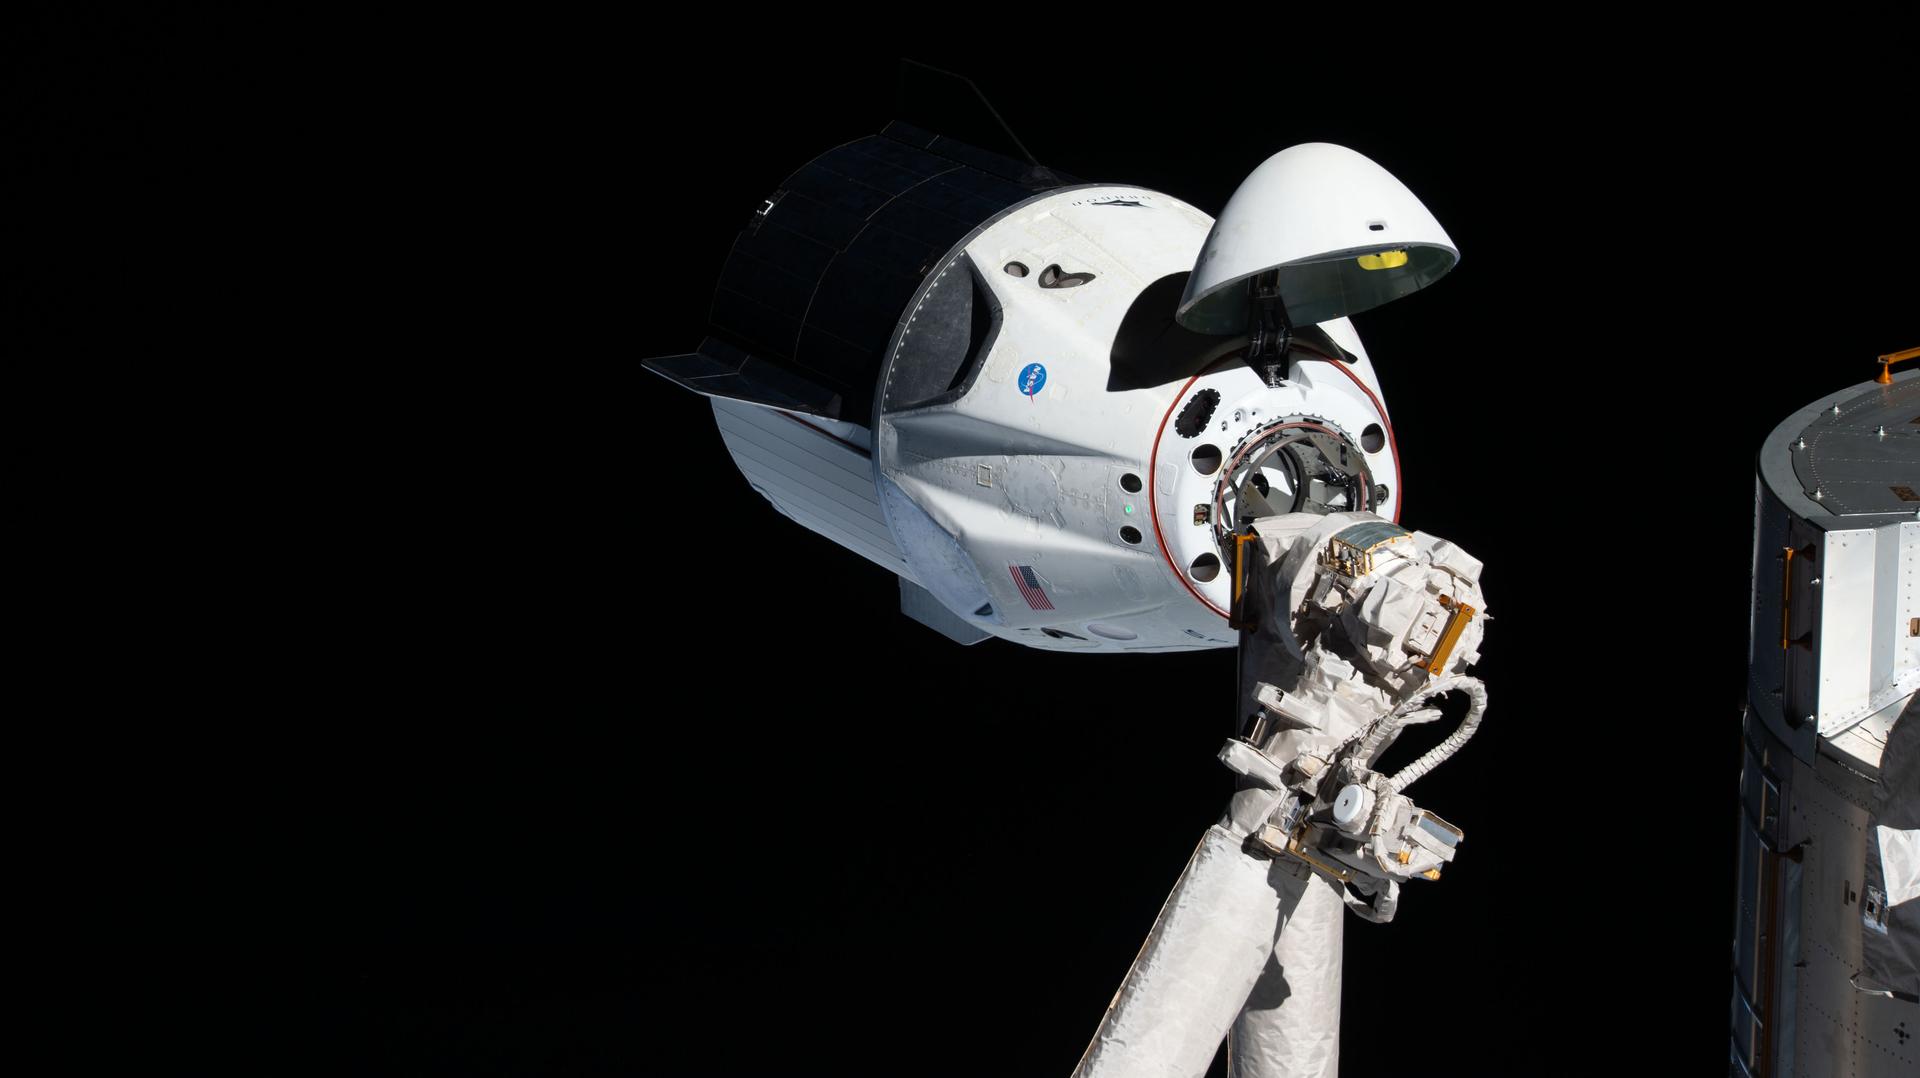 Pour qu'ils puissent voler l'an prochain, la NASA transfère des astronautes de Starliner à Crew Dragon